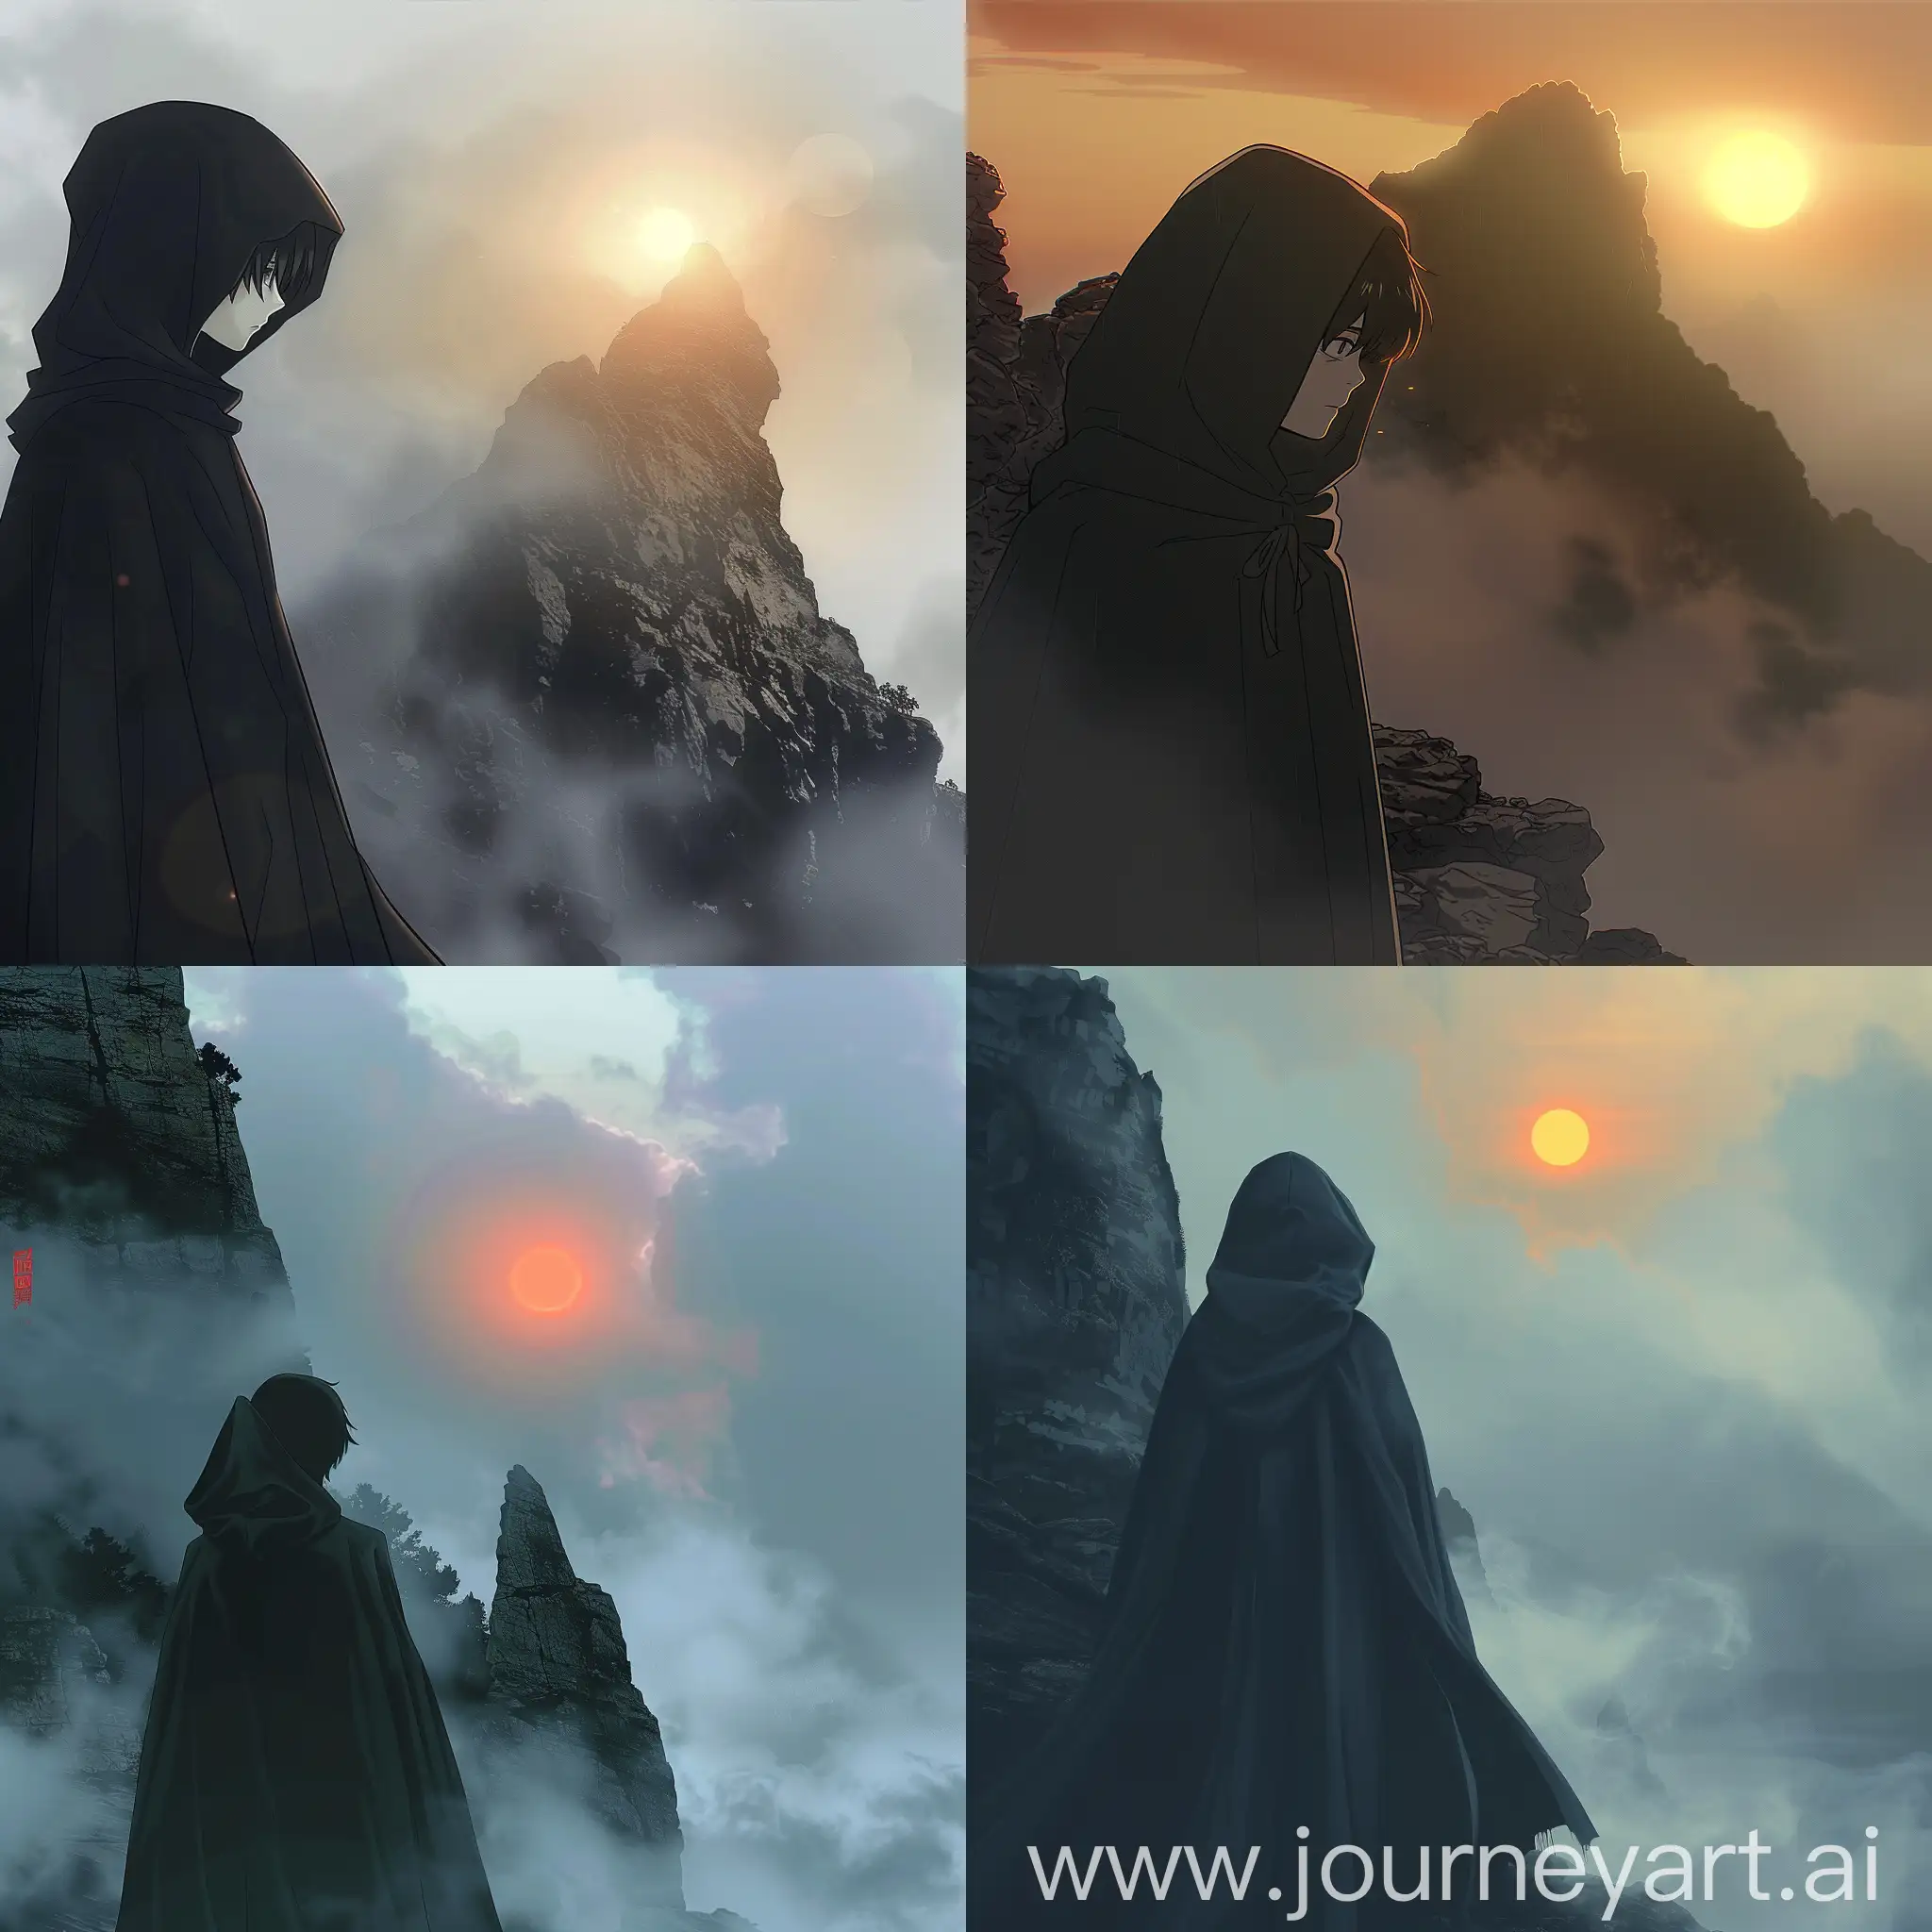 Стиль аниме. Мальчик одет в темный плащ с низко надвинутым капюшоном. Гора скалистая и окутана туманом. Вдали садится солнце.